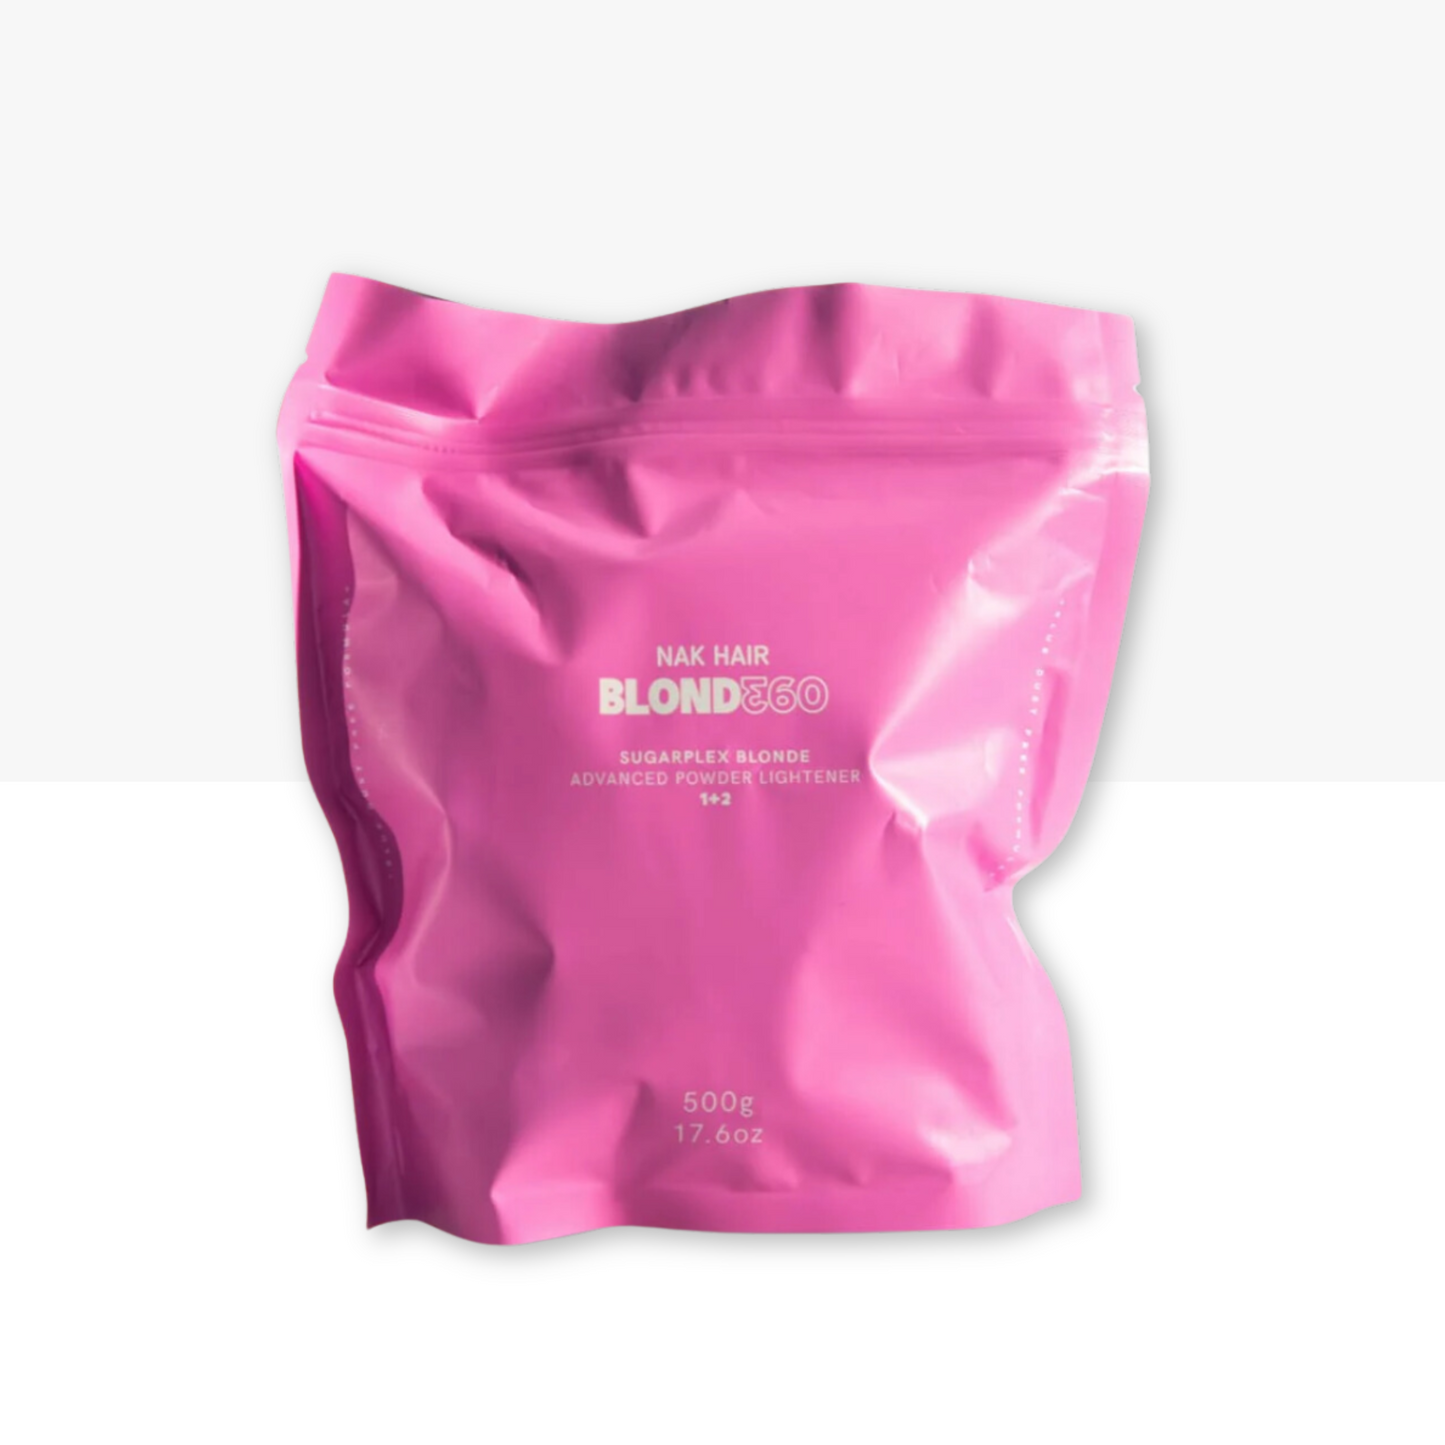 BLOND360 SugarPlex Blonde Advanced Powder Lightener